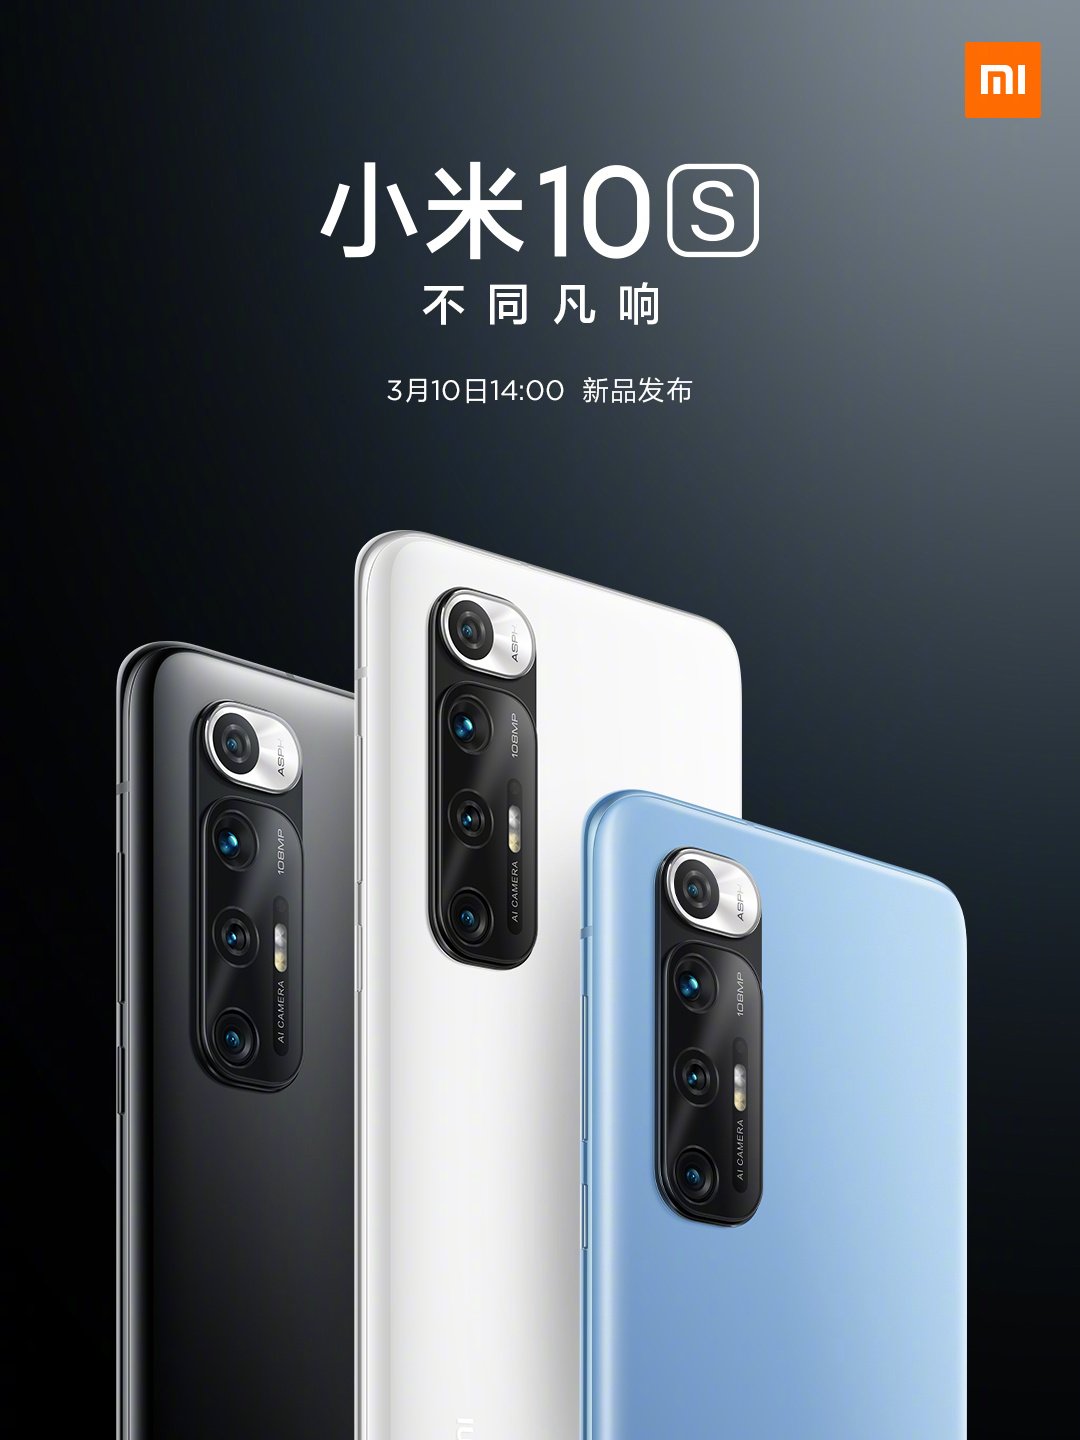 Cartaz da data de lançamento do Xiaomi Mi 10S